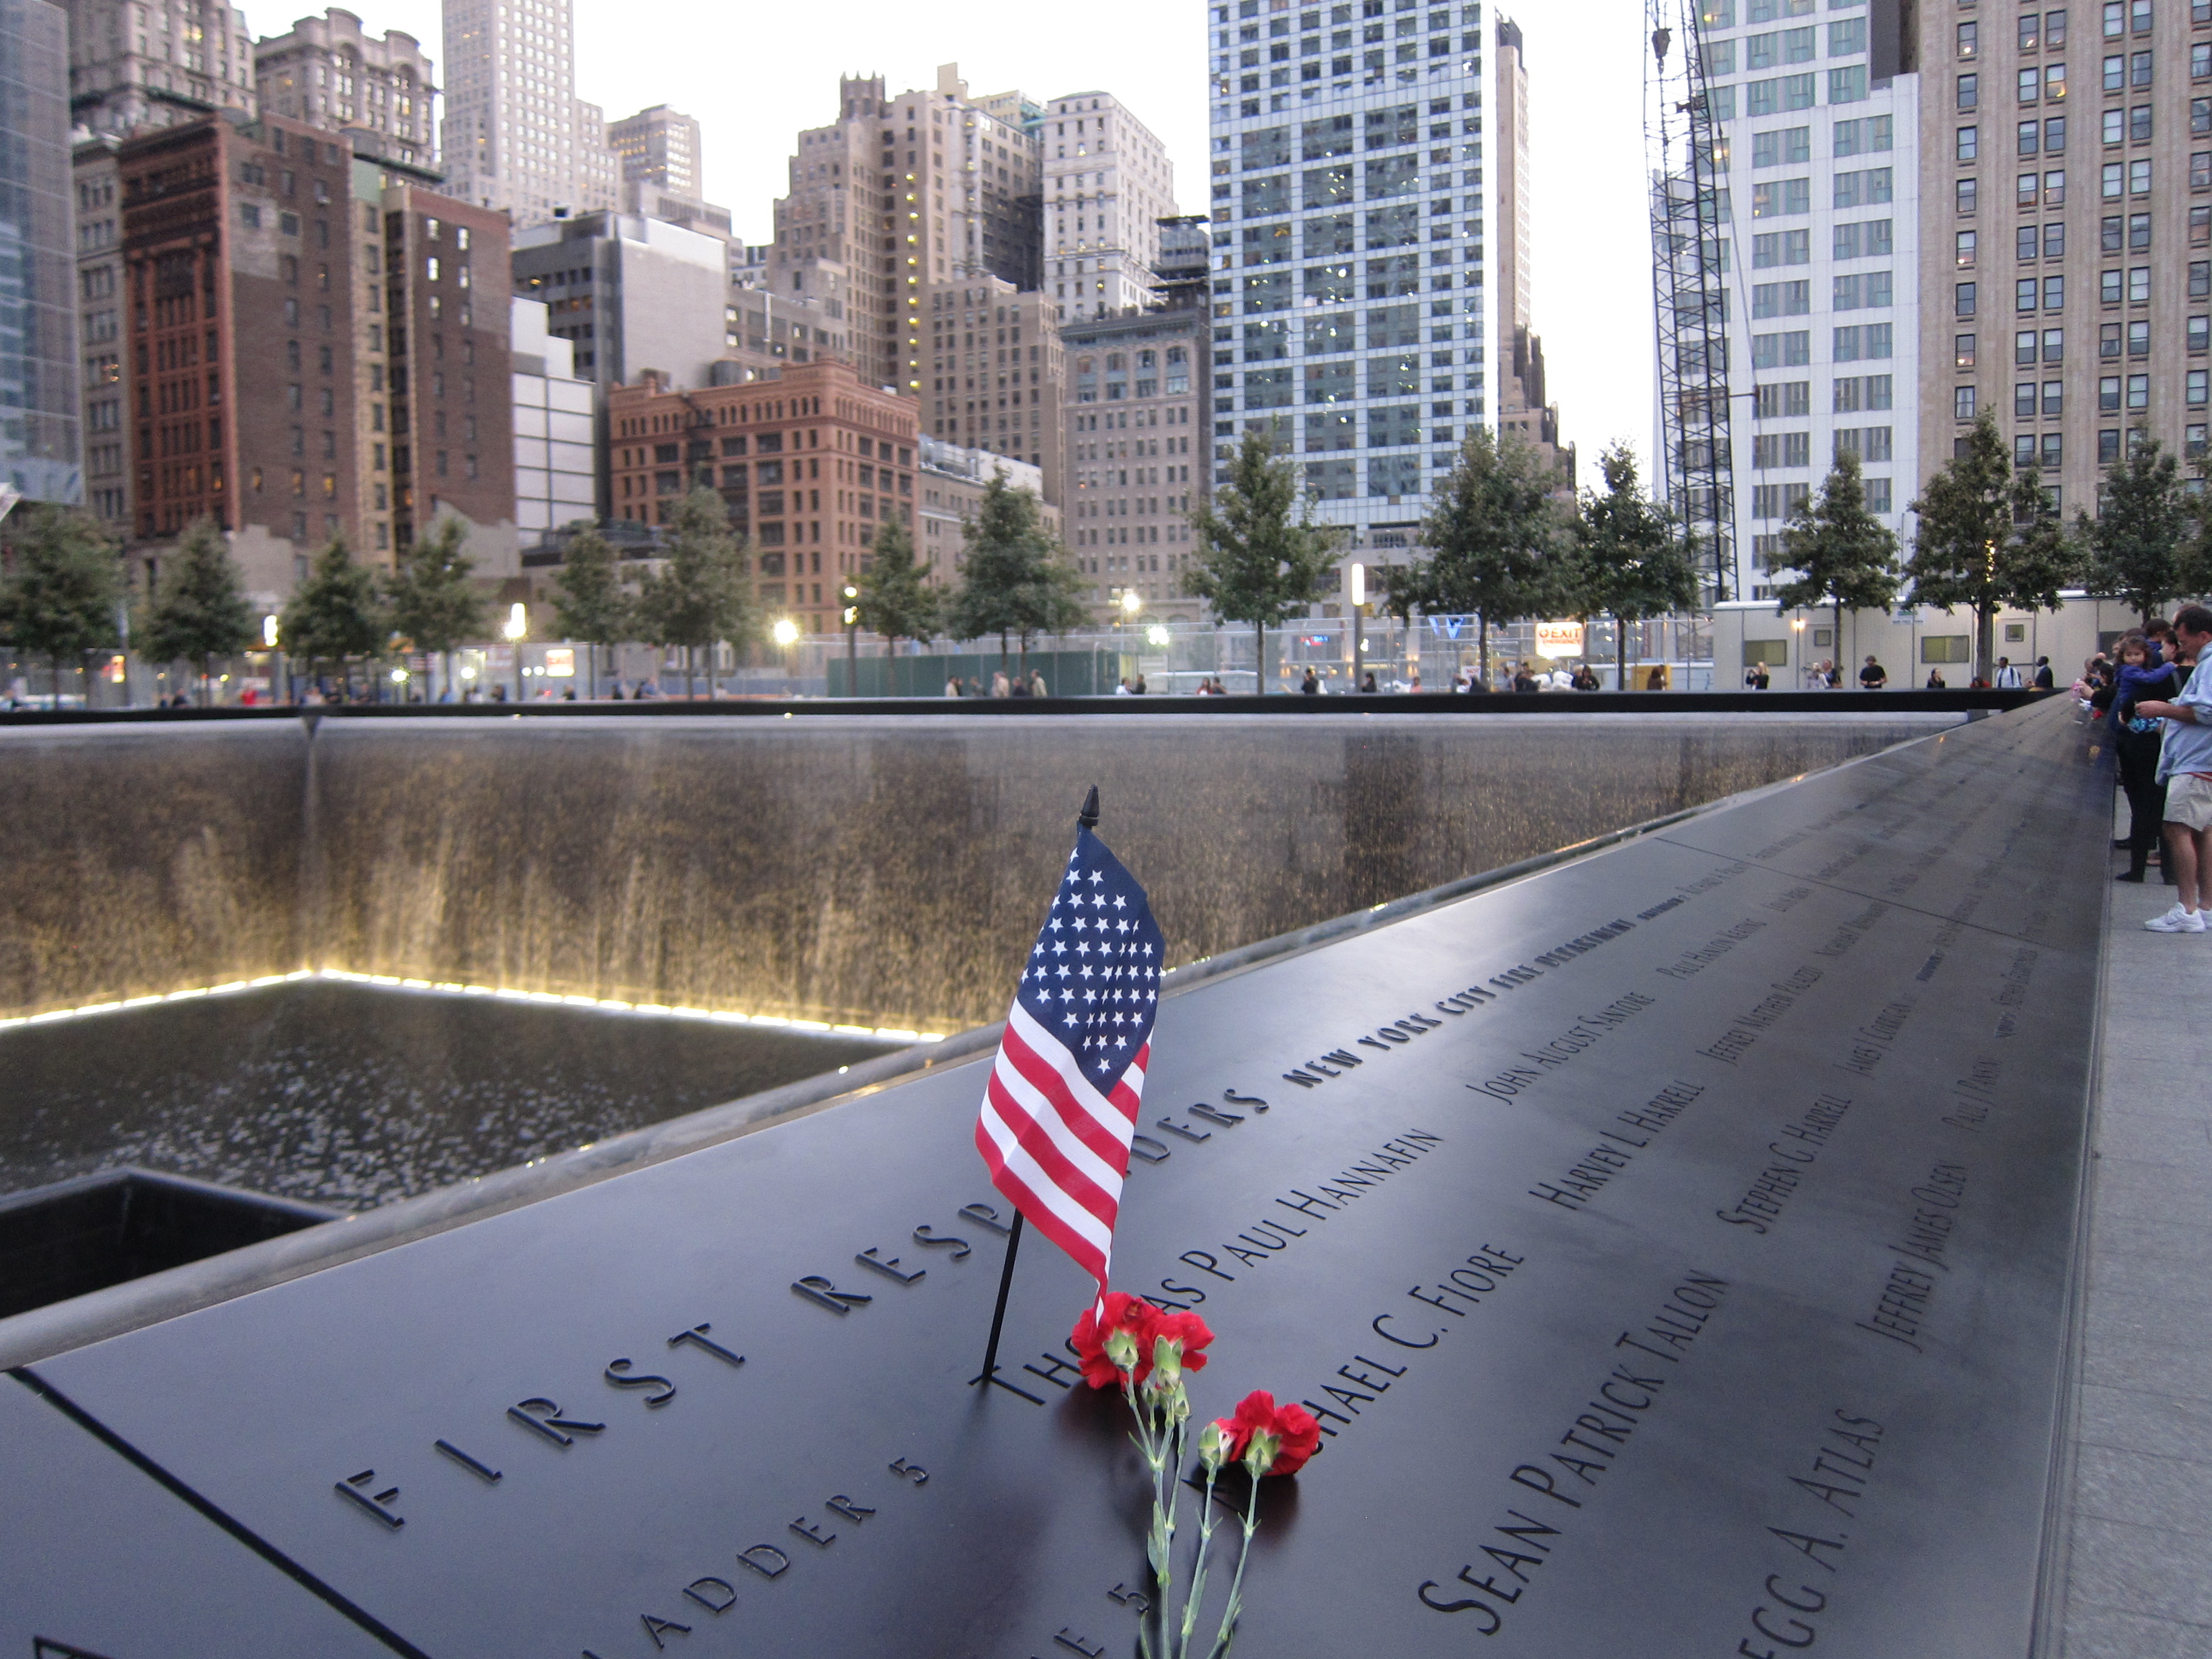 Image 9 11 Memorial